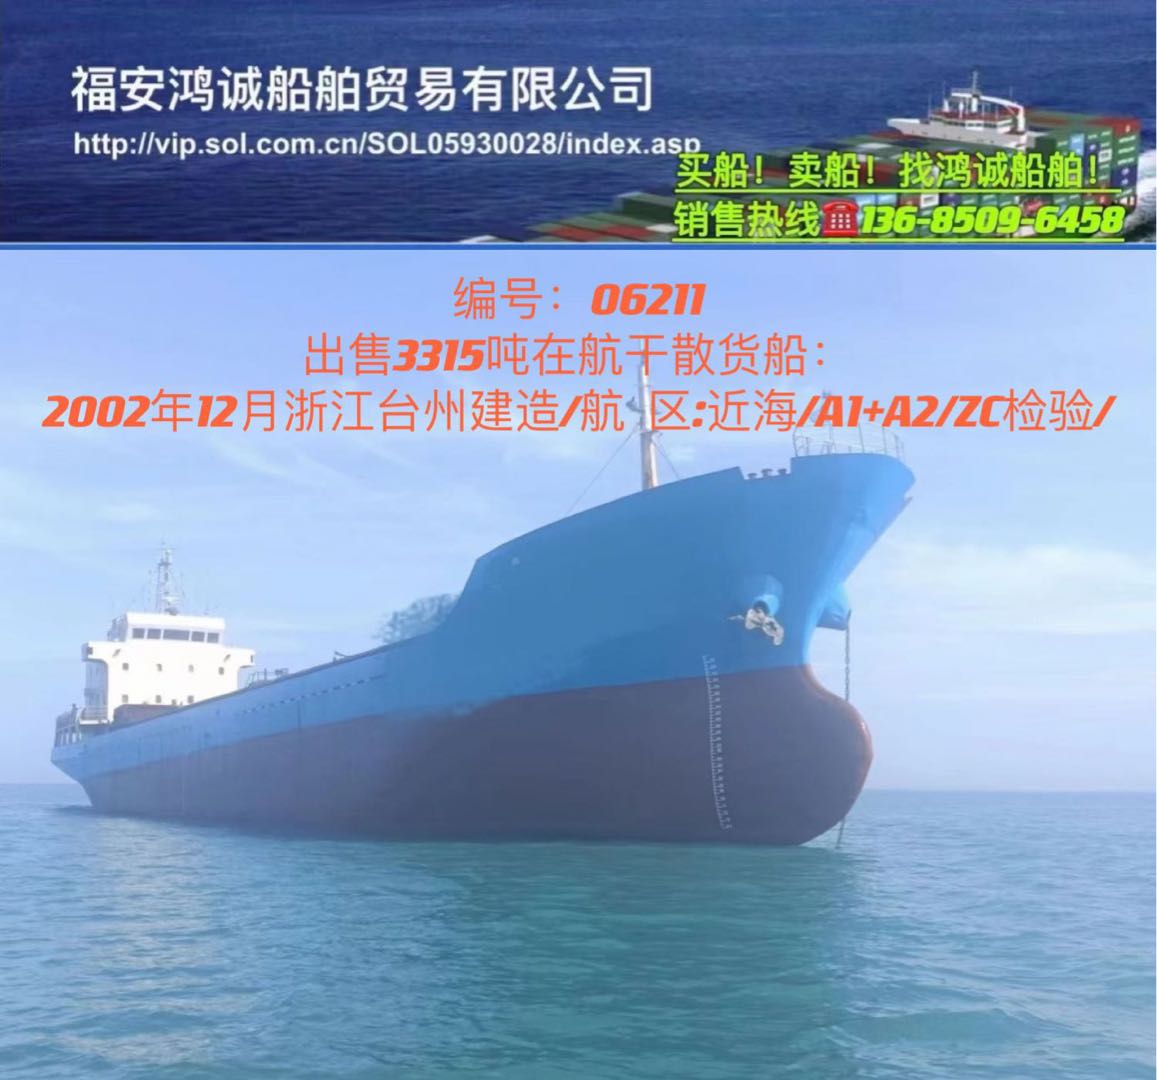 低价出售3315吨在航干货船